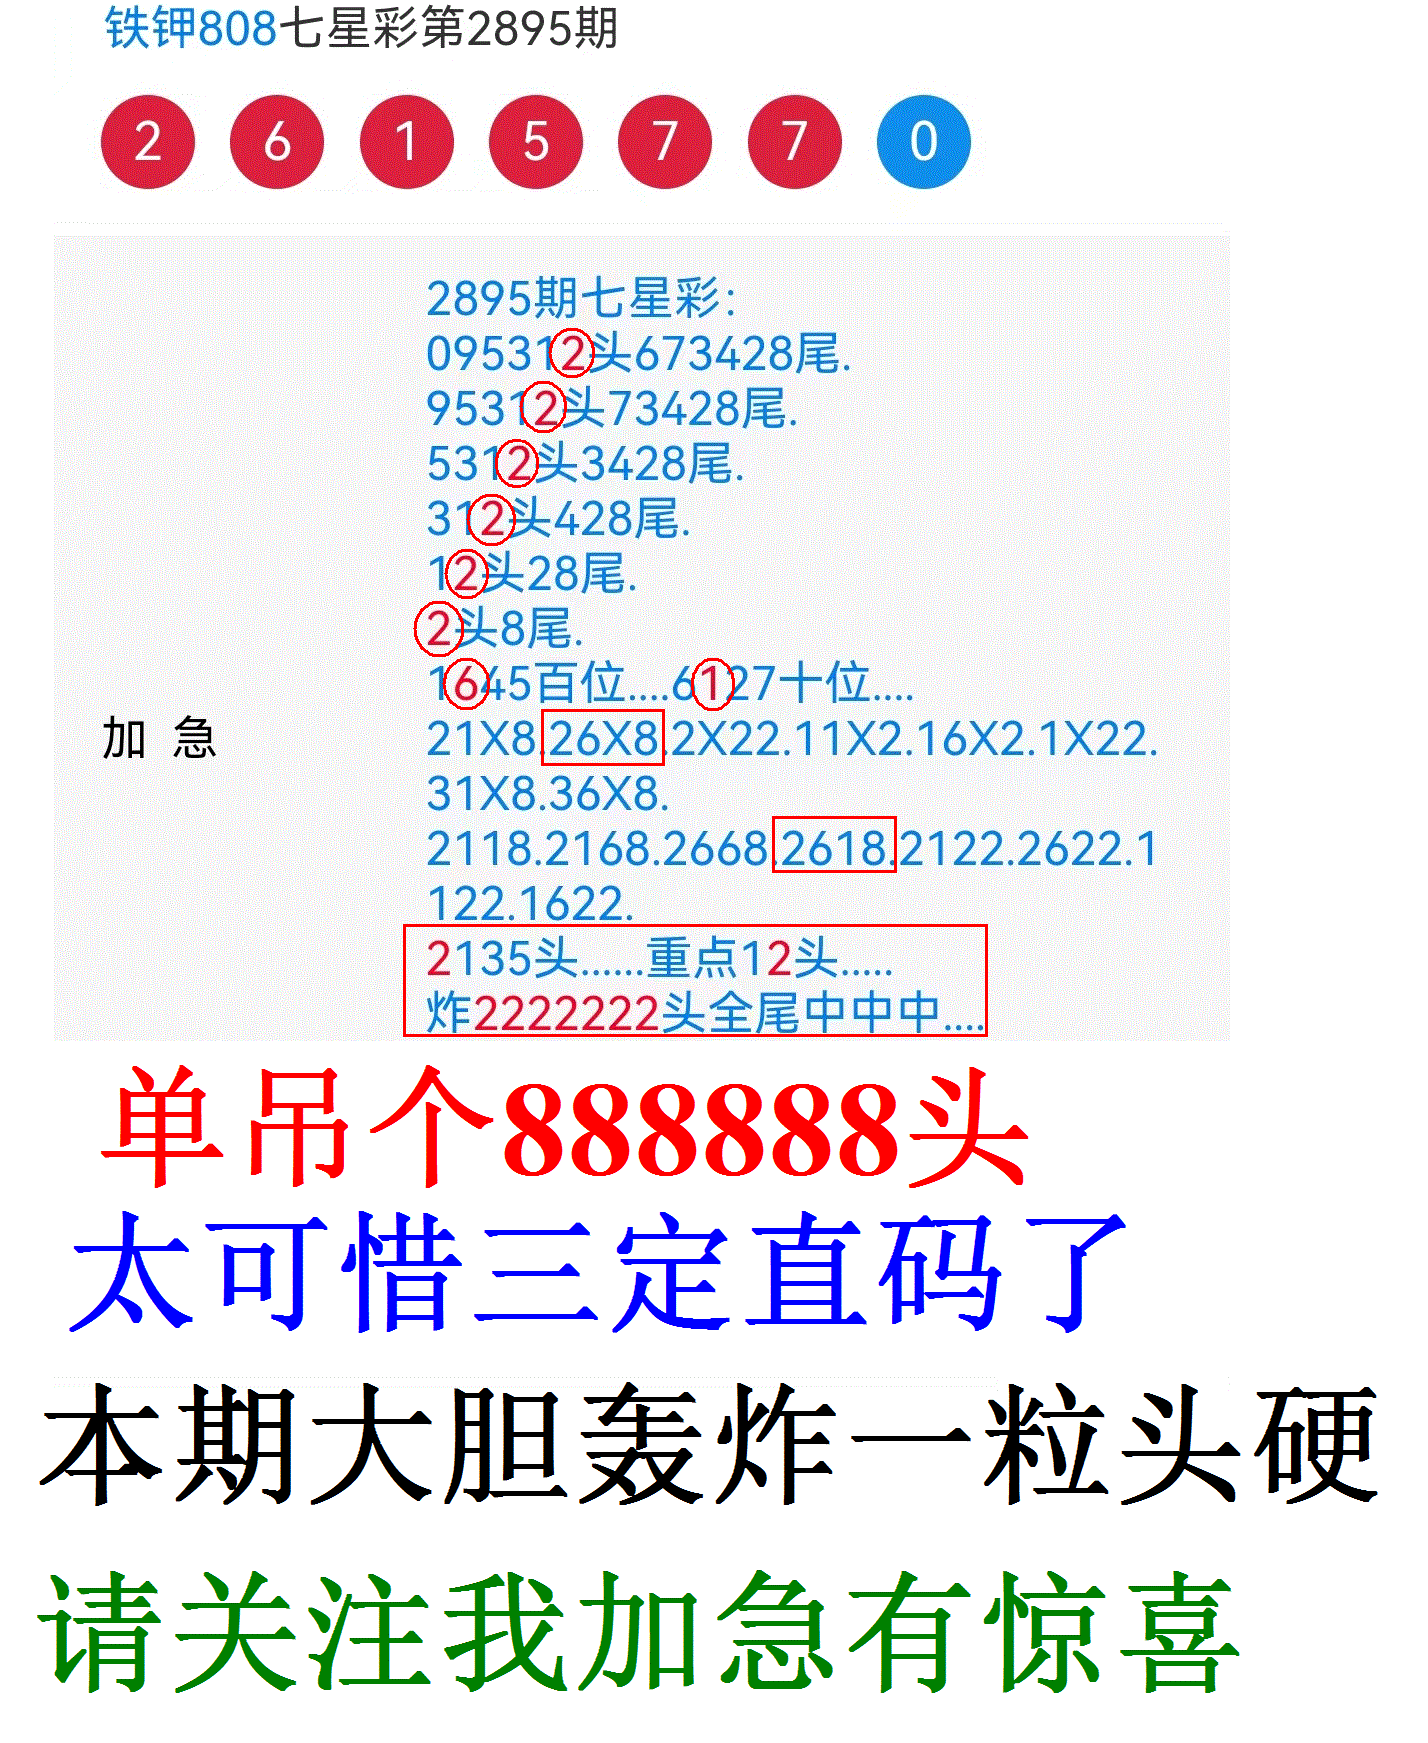 000055.GIF(2001).GIF